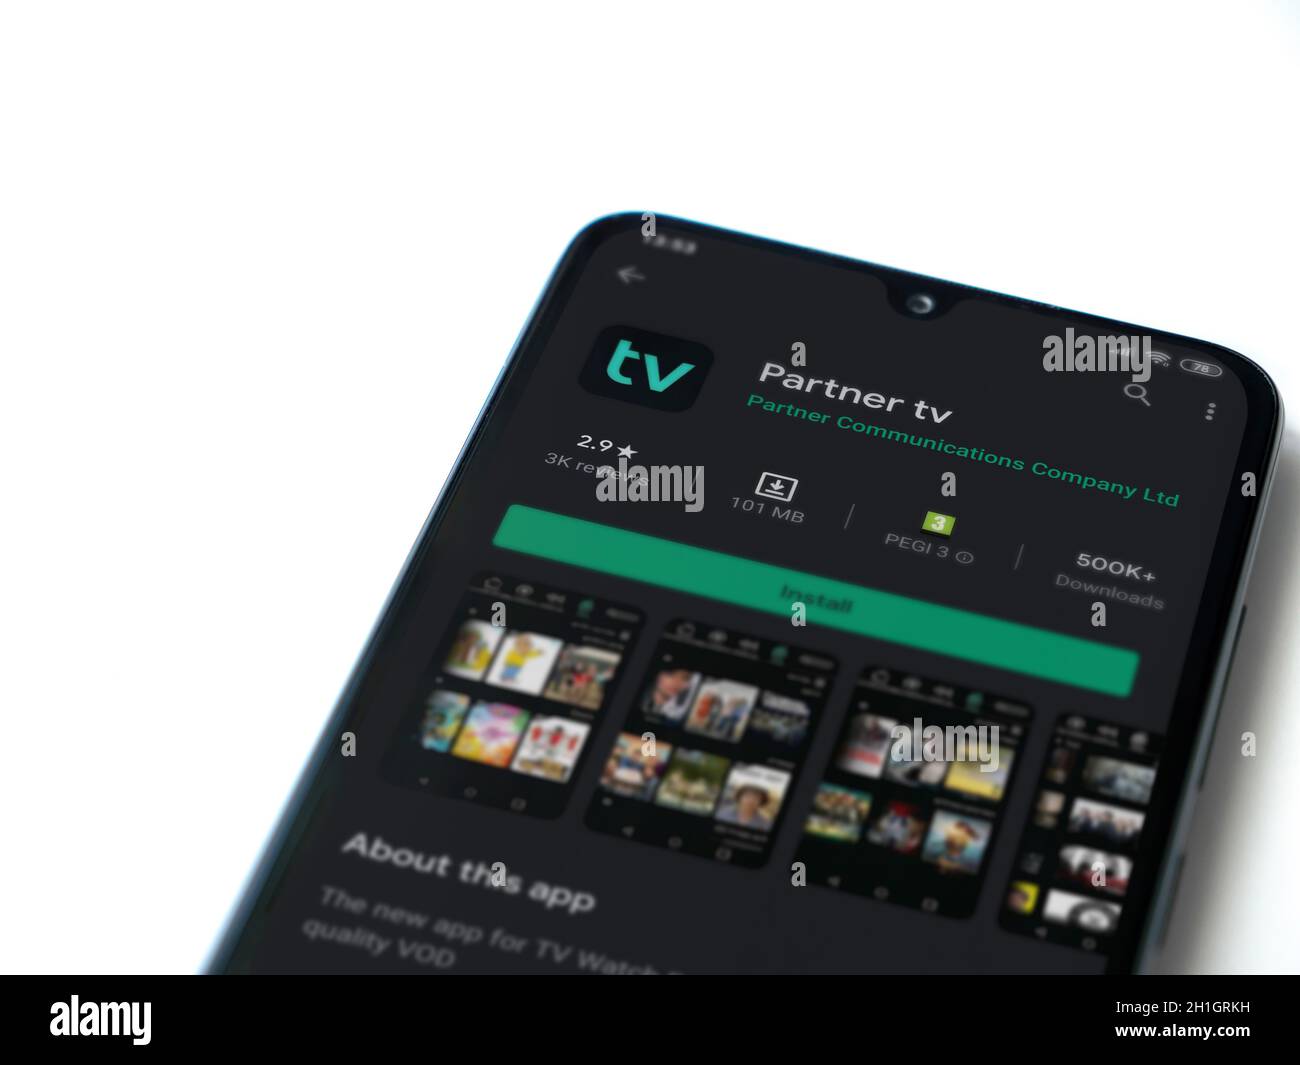 LOD, Israele - 8 luglio 2020: App partner tv play store page sul display di uno smartphone nero isolato su sfondo bianco. Vista dall'alto in piano Foto Stock